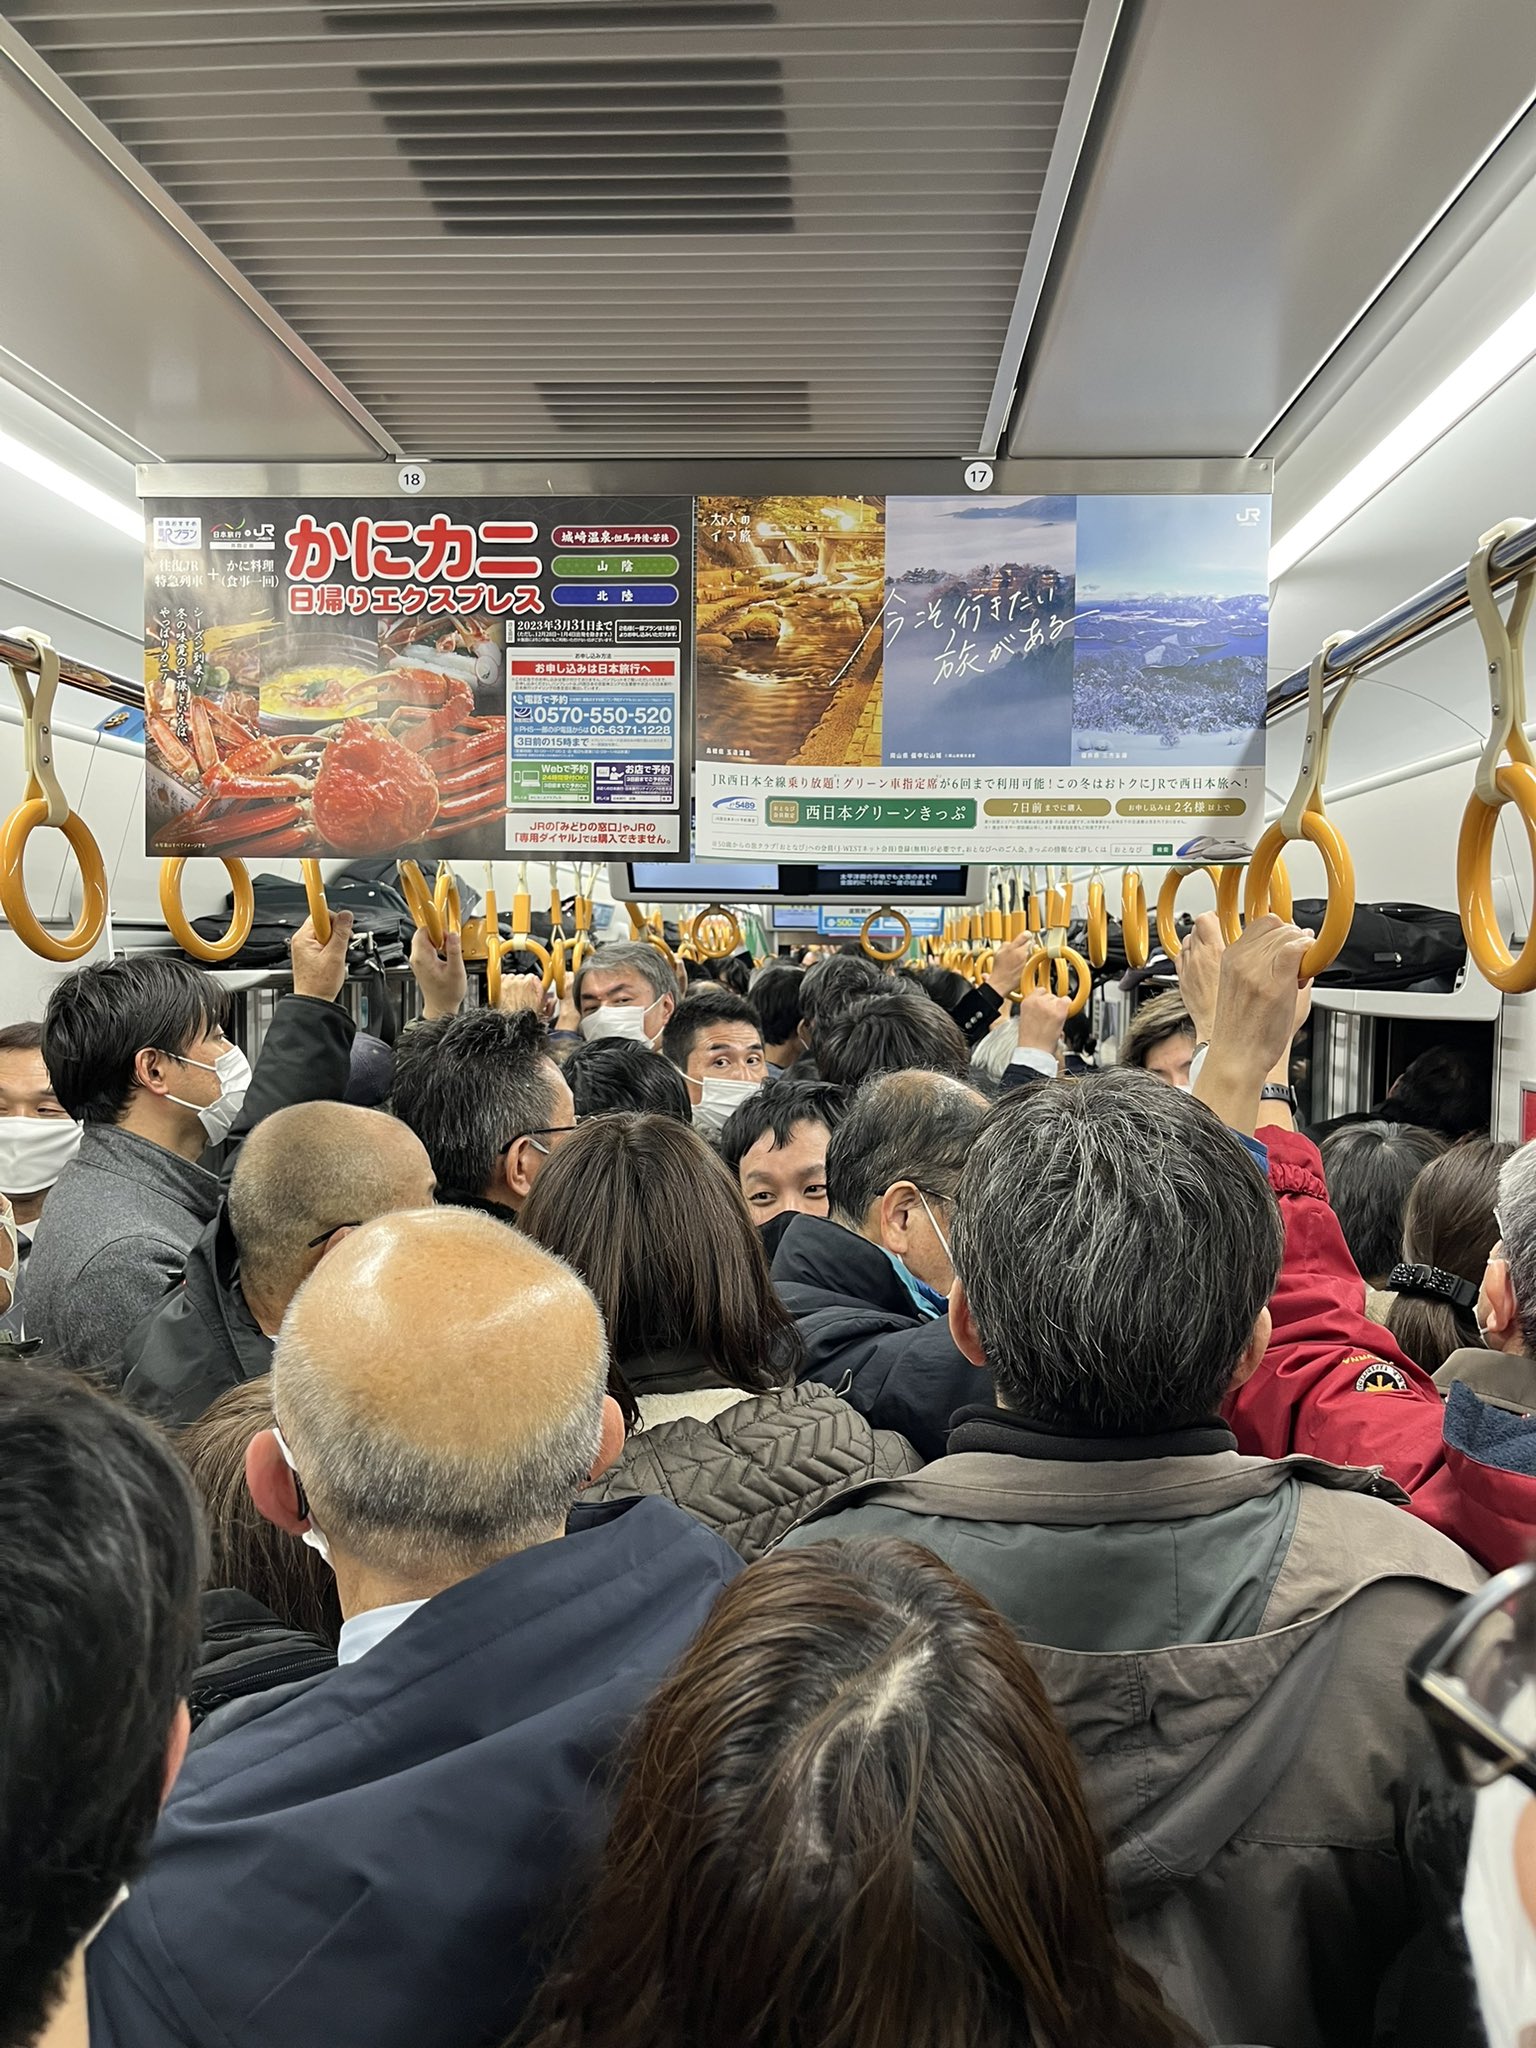 【悲報】JR西日本、乗客を満員状態で車内に最大10時間監禁 車掌｢指令に歯向かうと罰せられる｣ 119番通報で16人が救急搬送